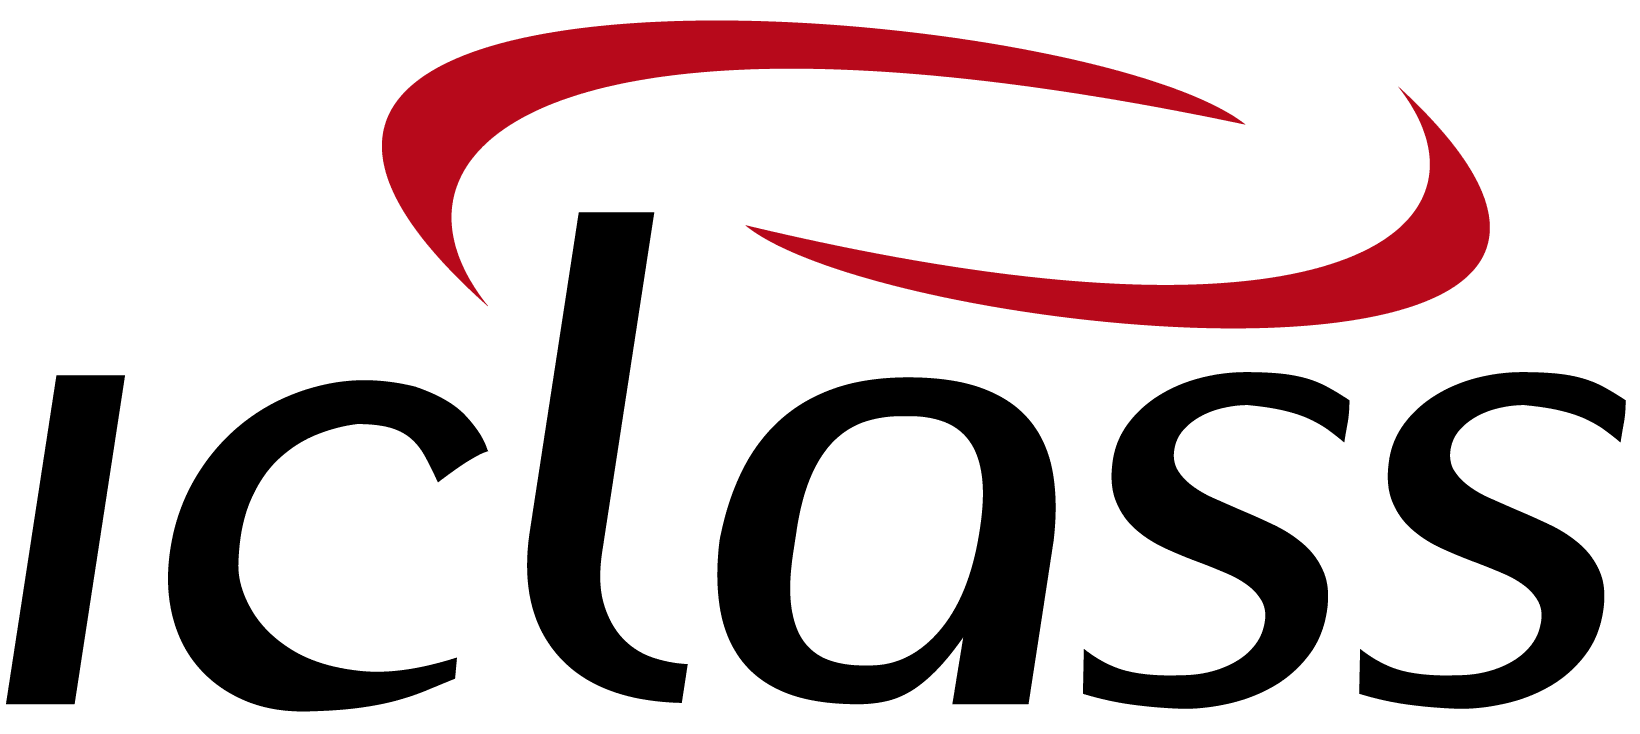 logo IClass Software de Ordem de Serviço Online Área do Cliente